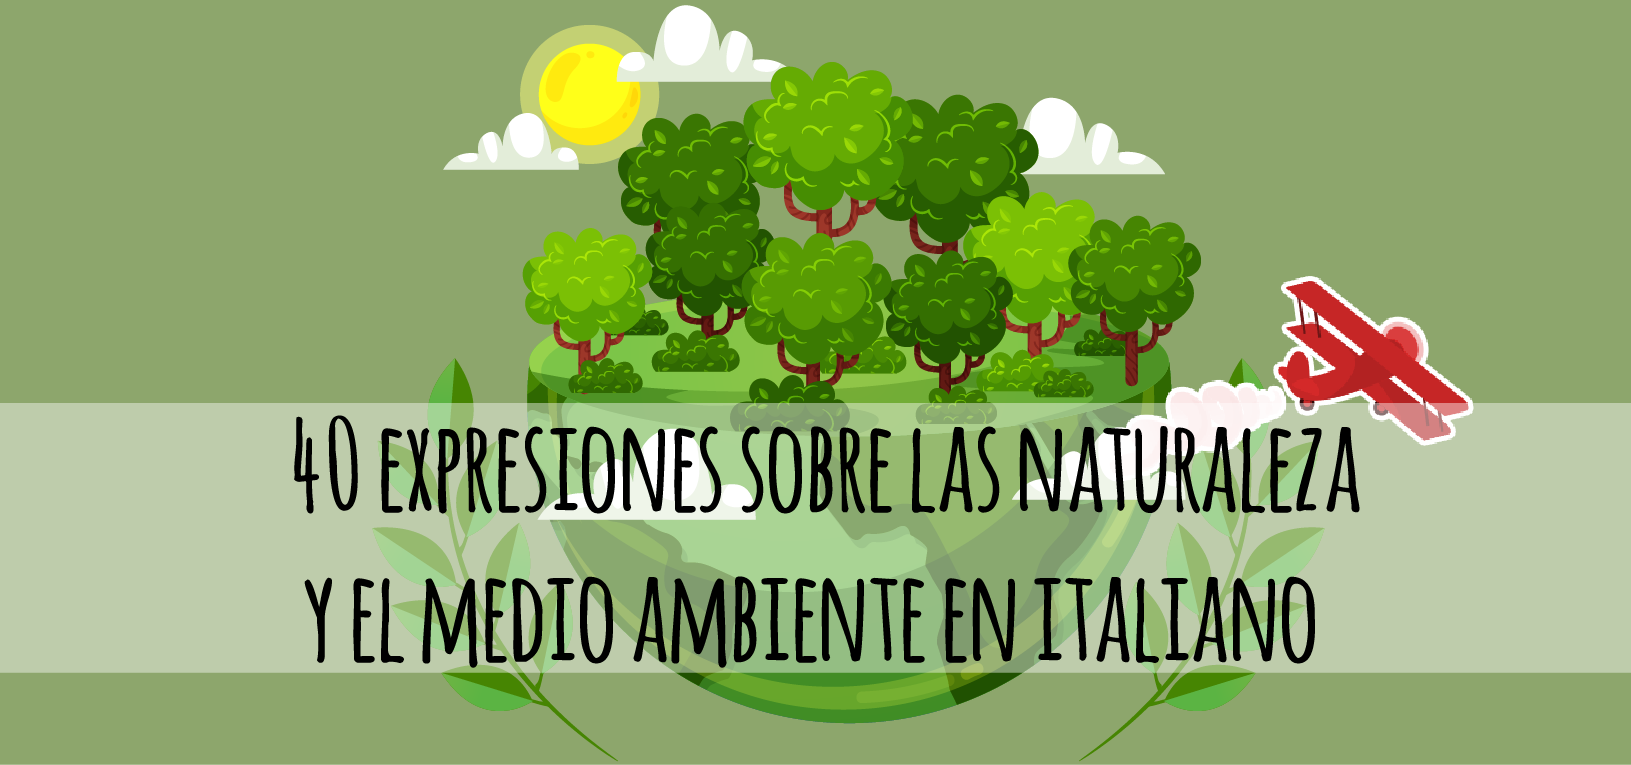 40 expresiones sobre la naturaleza y el medio ambiente en italiano -  